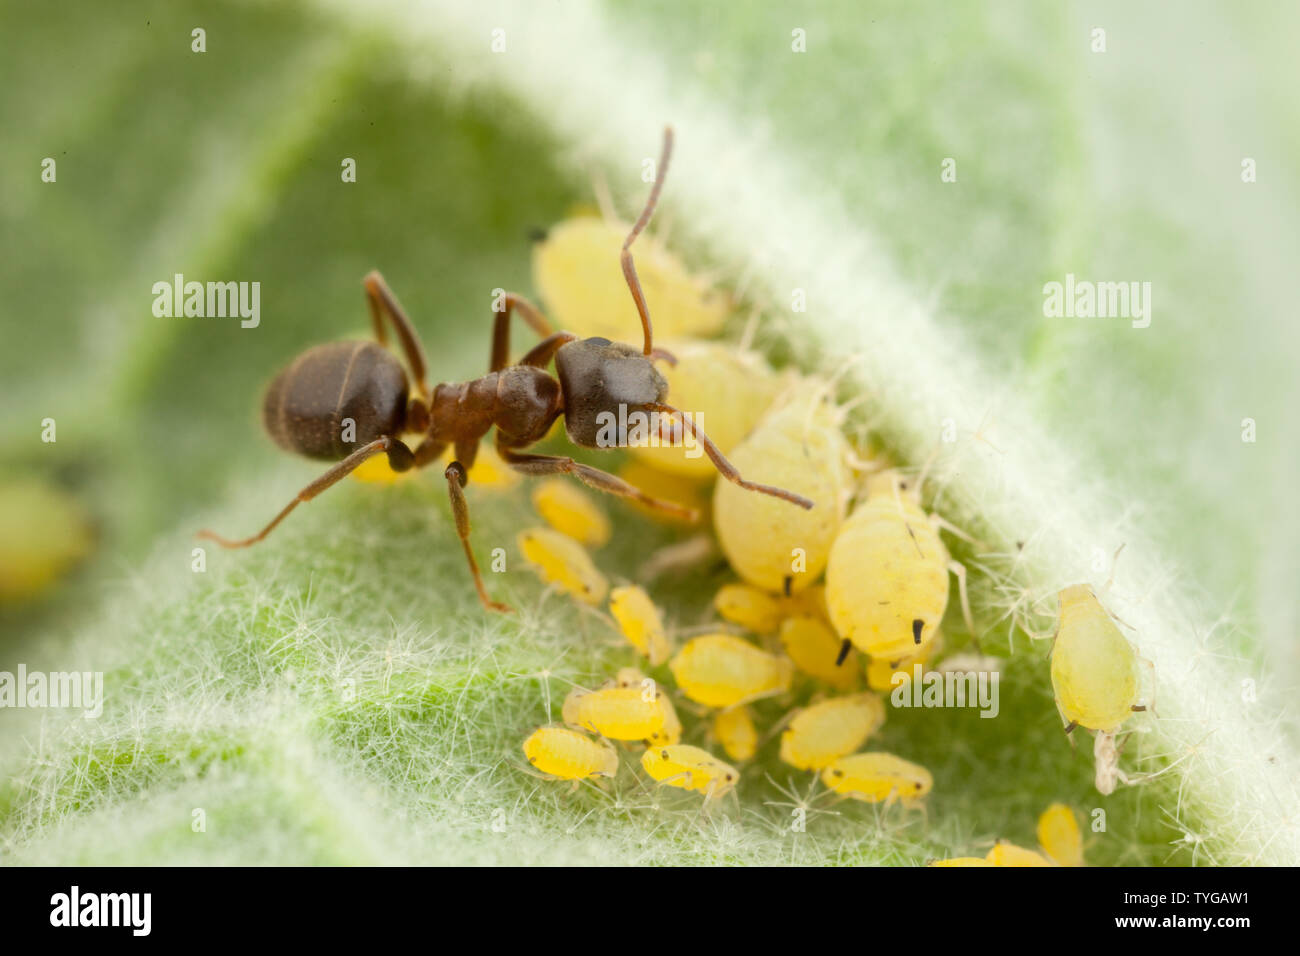 Auf der Unterseite eines Bleis ernährt sich eine schwarze Ameise vom ausgeschiedenen Honigtau einer Blattlaus Stockfoto